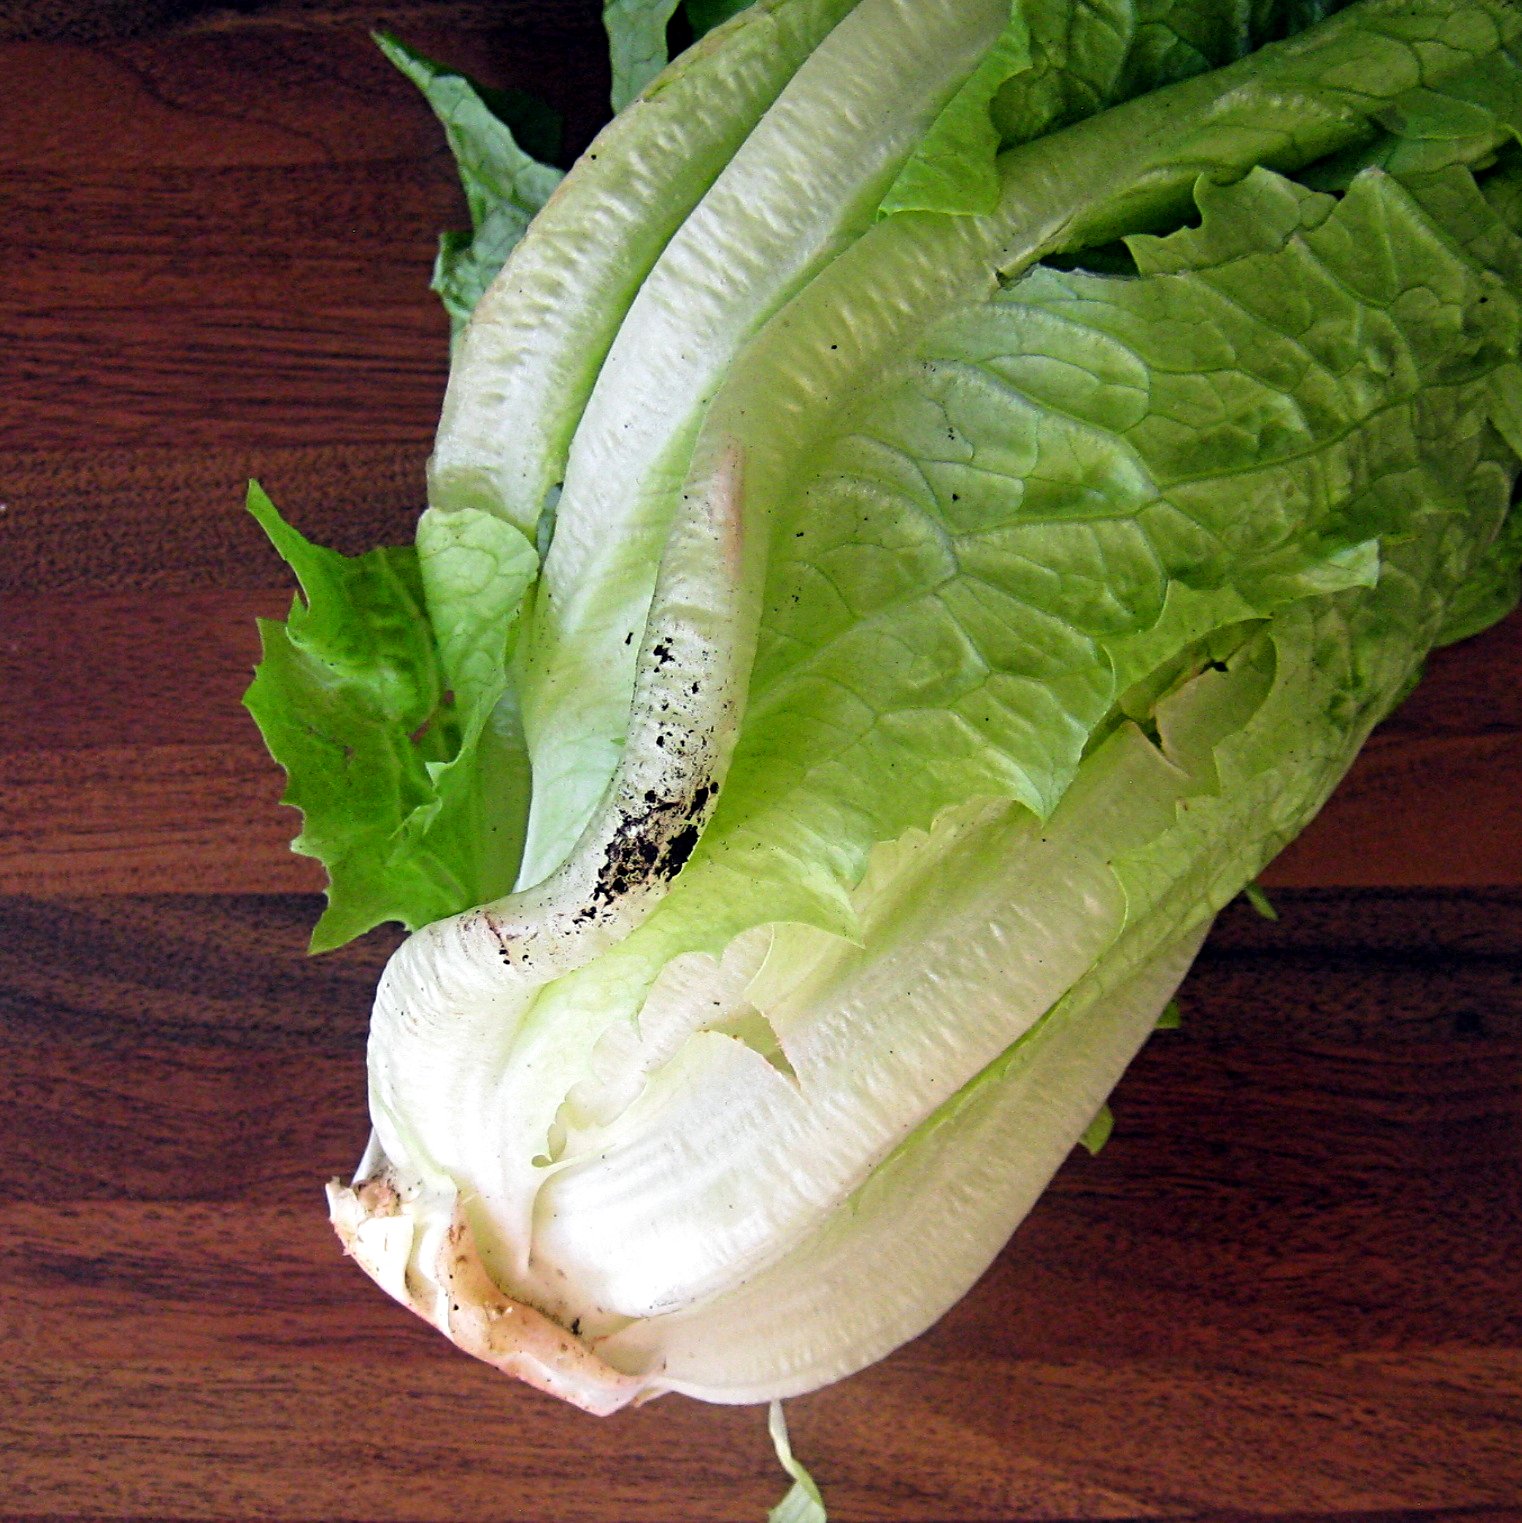 Salad spinner Efficient - BRA